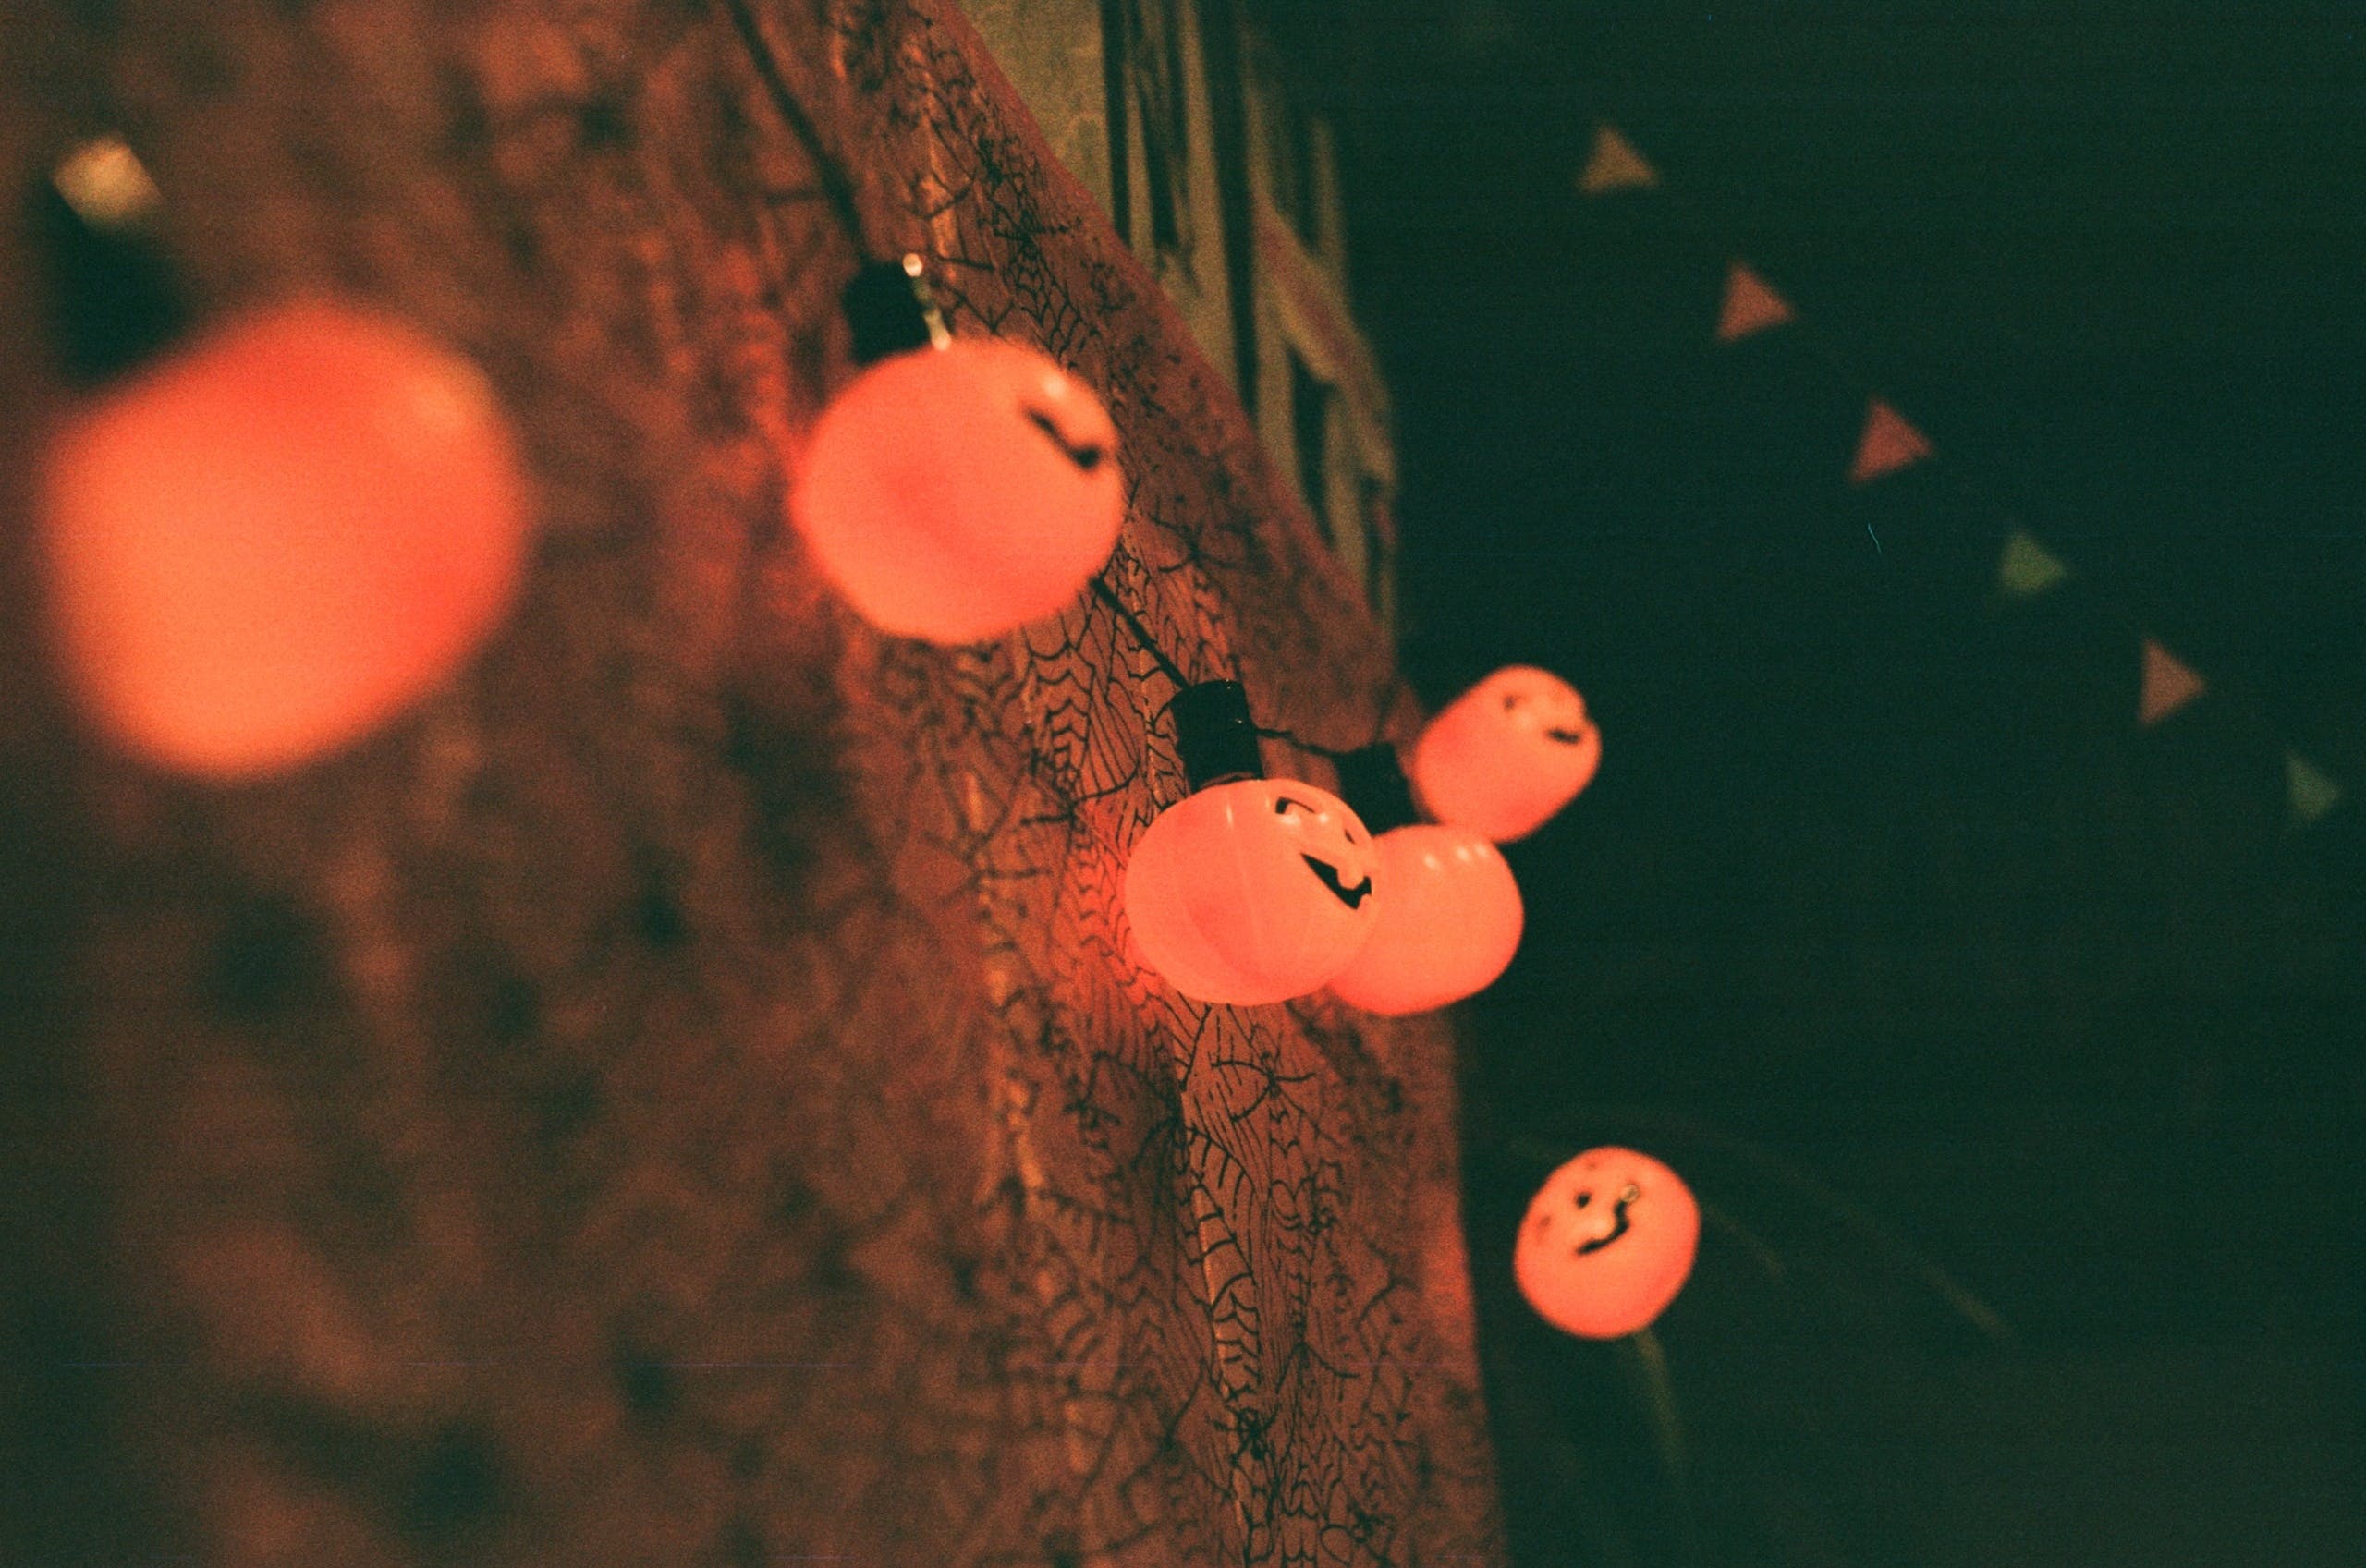 pumpkin lights